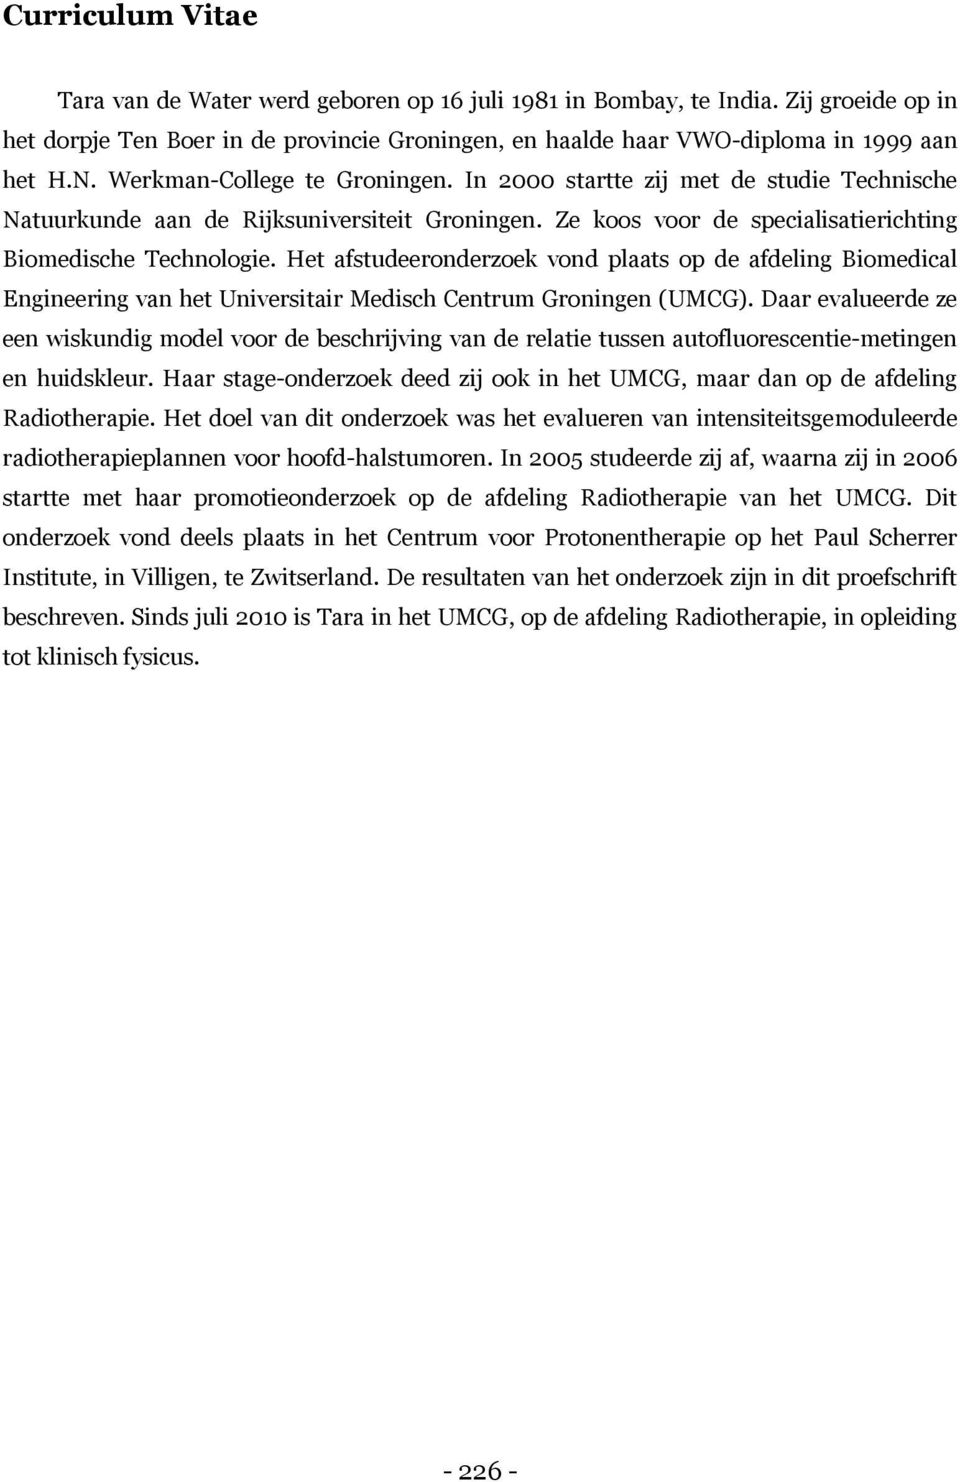 Het afstudeeronderzoek vond plaats op de afdeling Biomedical Engineering van het Universitair Medisch Centrum Groningen (UMCG).